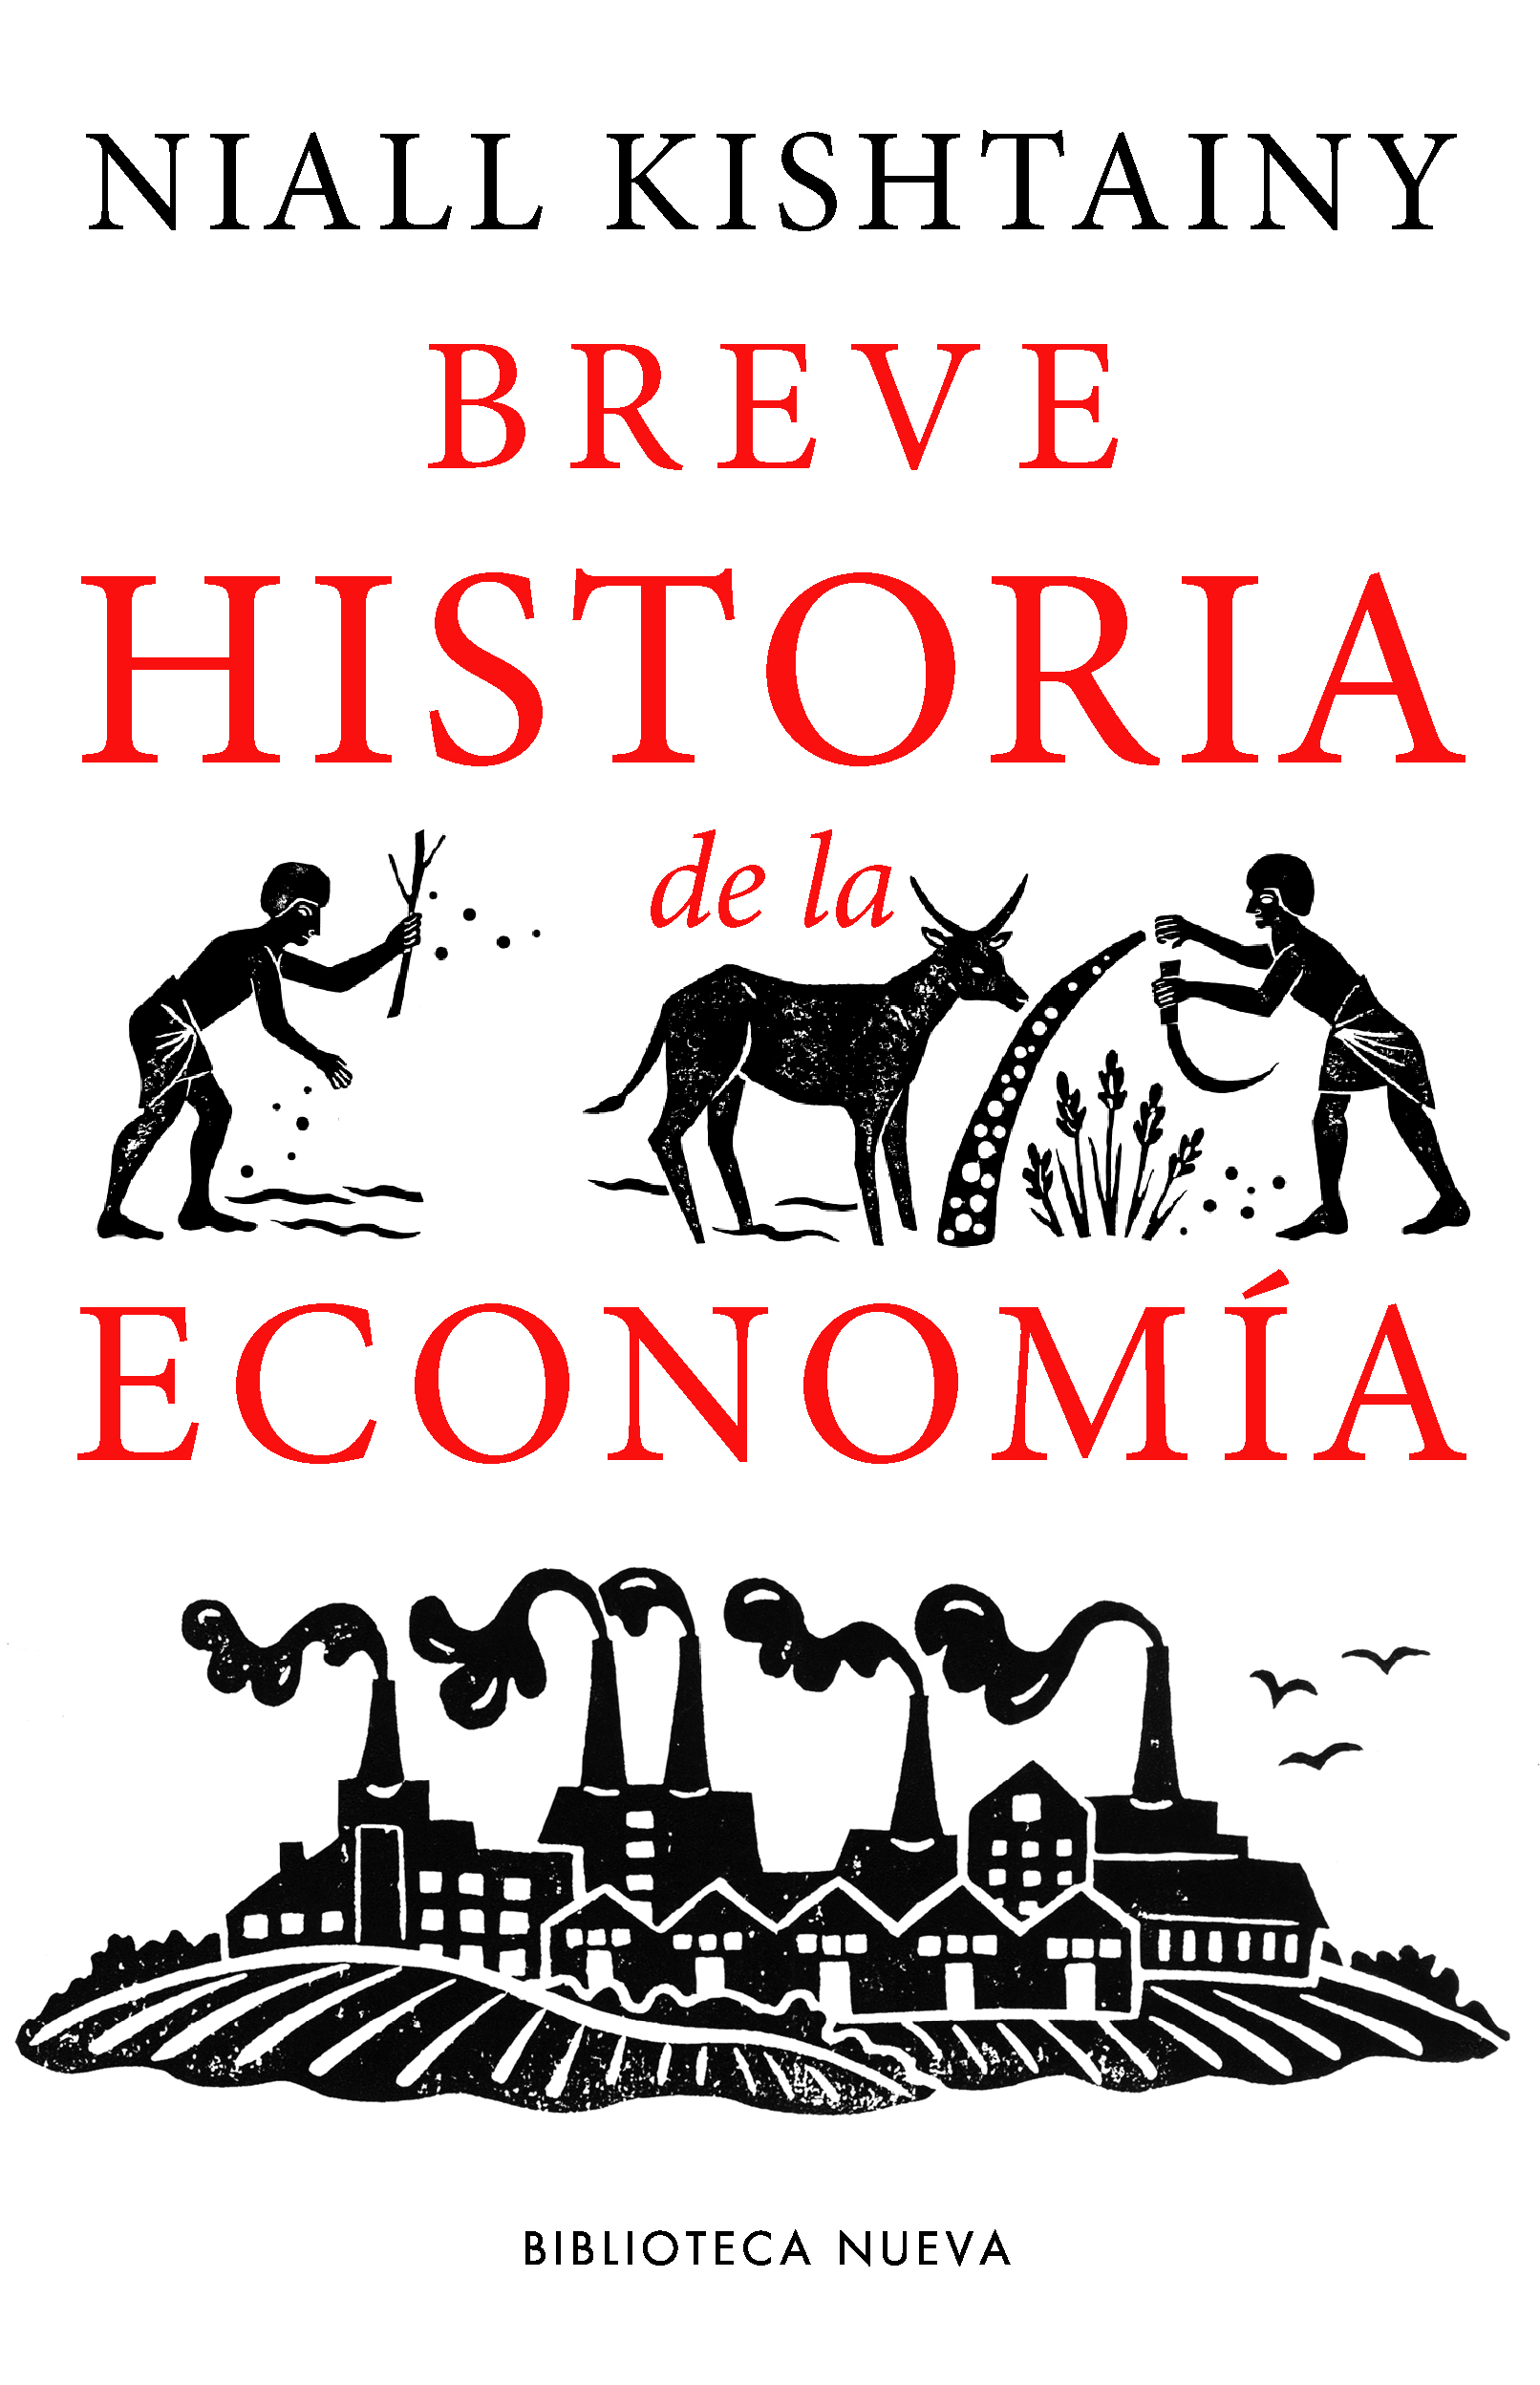 niall kishtainy Breve historia de la economía – Niall Kishtainy BREVE HISTORIA DE LA ECONOMIA BW 2